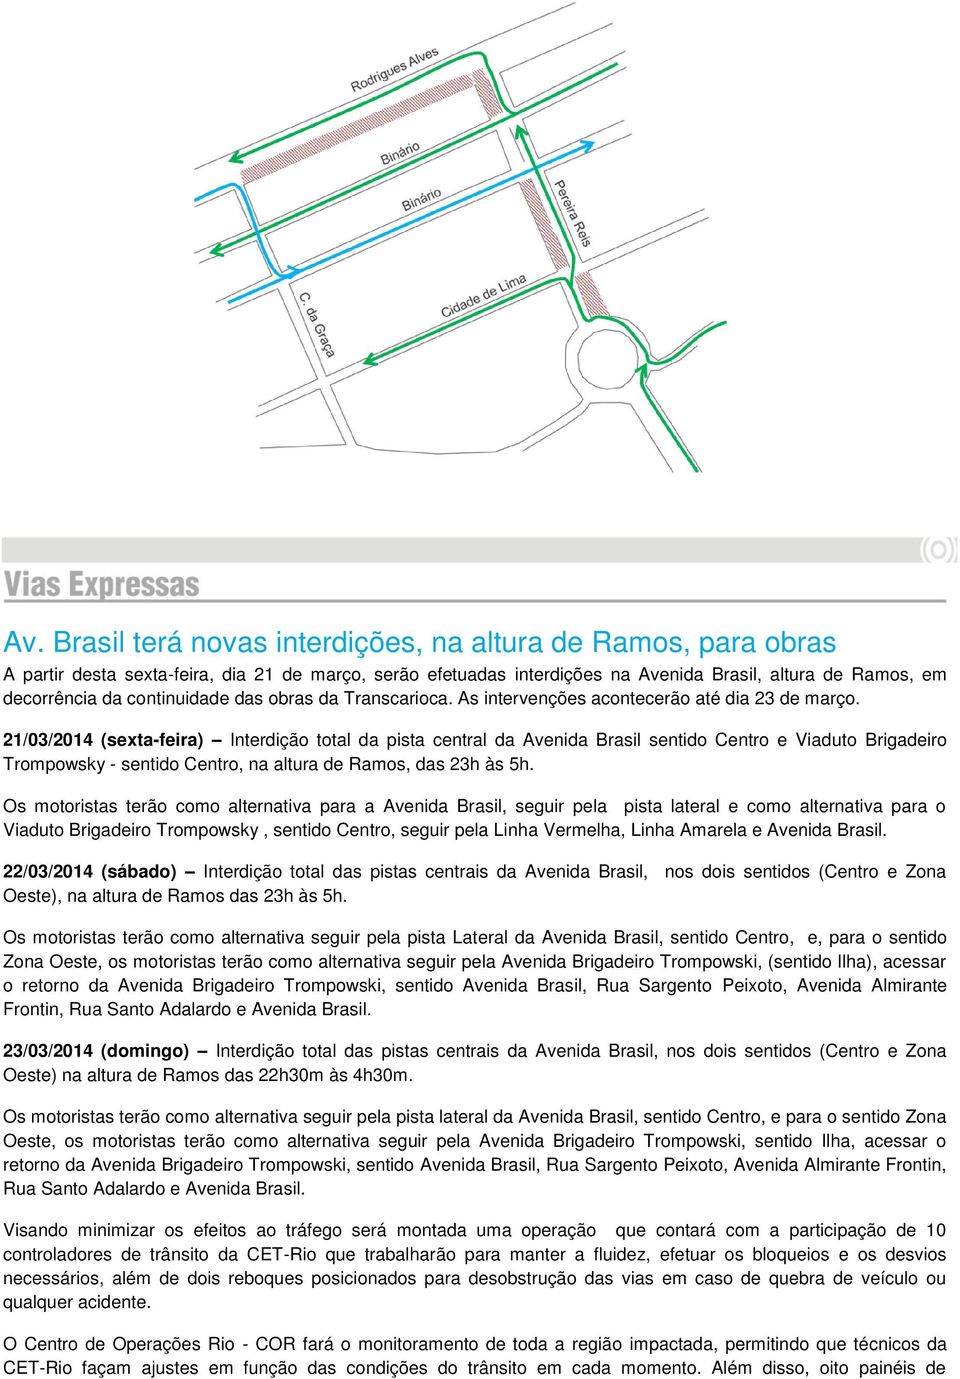 21/03/2014 (sexta-feira) Interdição total da pista central da Avenida Brasil sentido Centro e Viaduto Brigadeiro Trompowsky - sentido Centro, na altura de Ramos, das 23h às 5h.